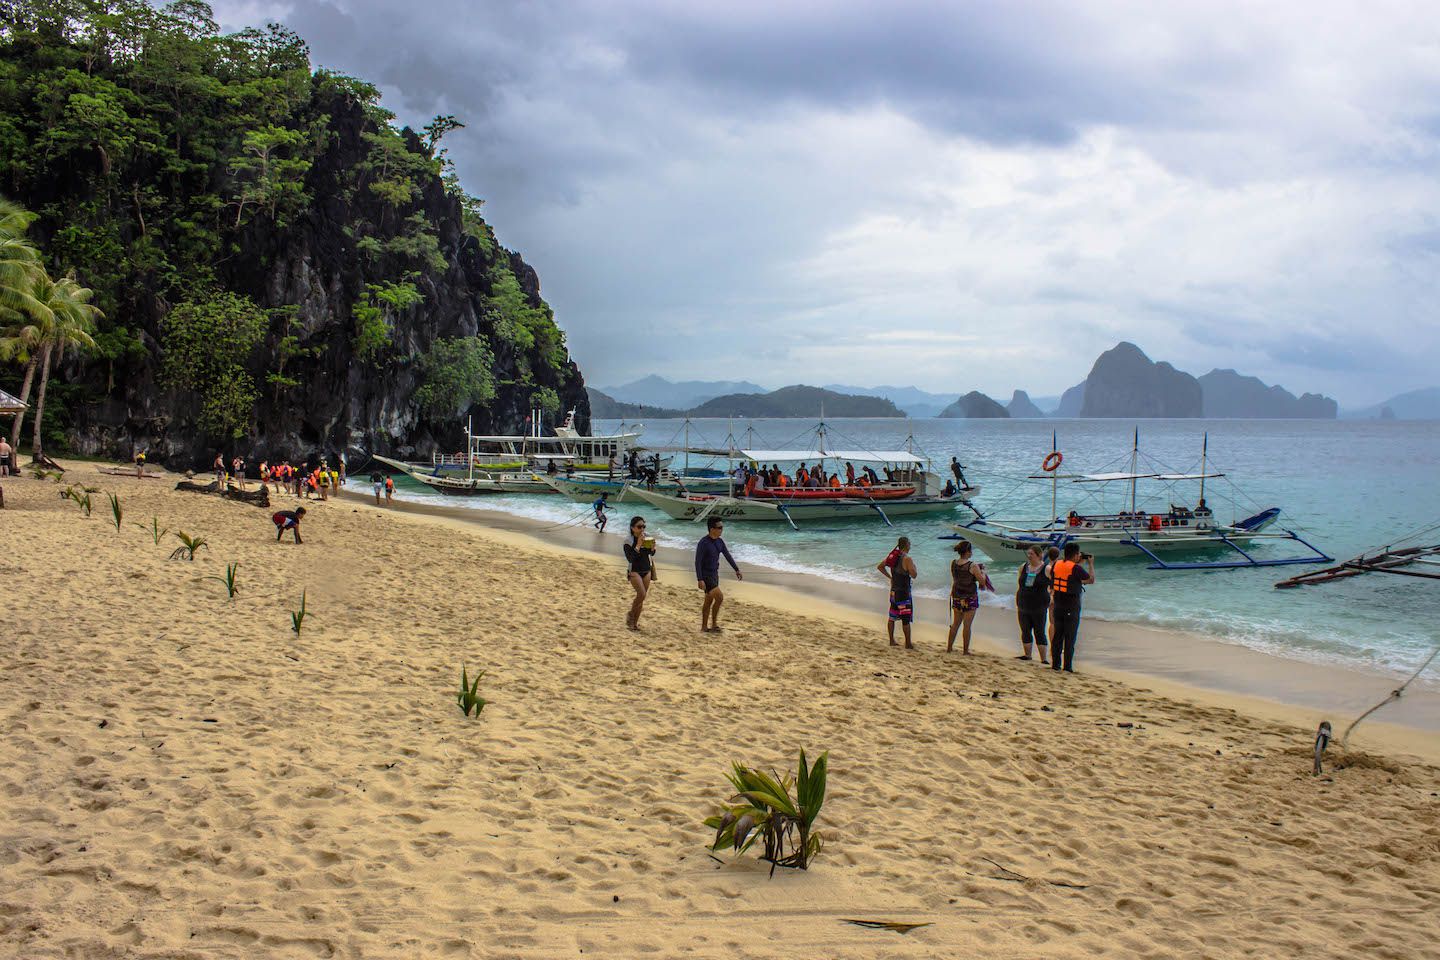 View of 7 Commando Beach, El Nido, Philippines